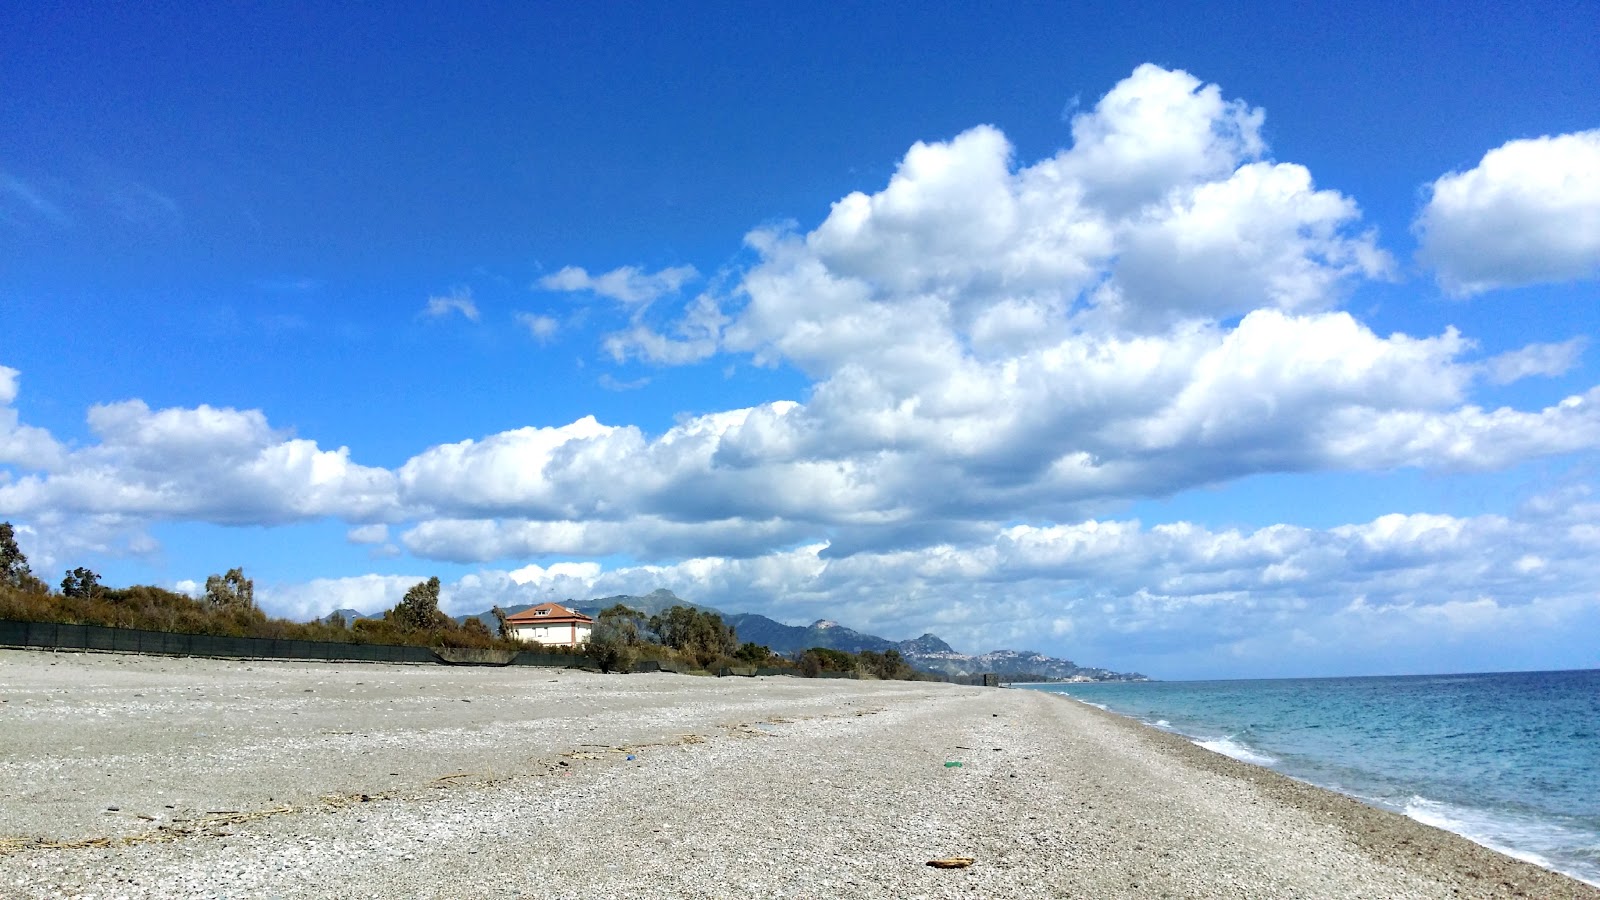 Foto von Spiaggia Fondachello mit langer gerader strand